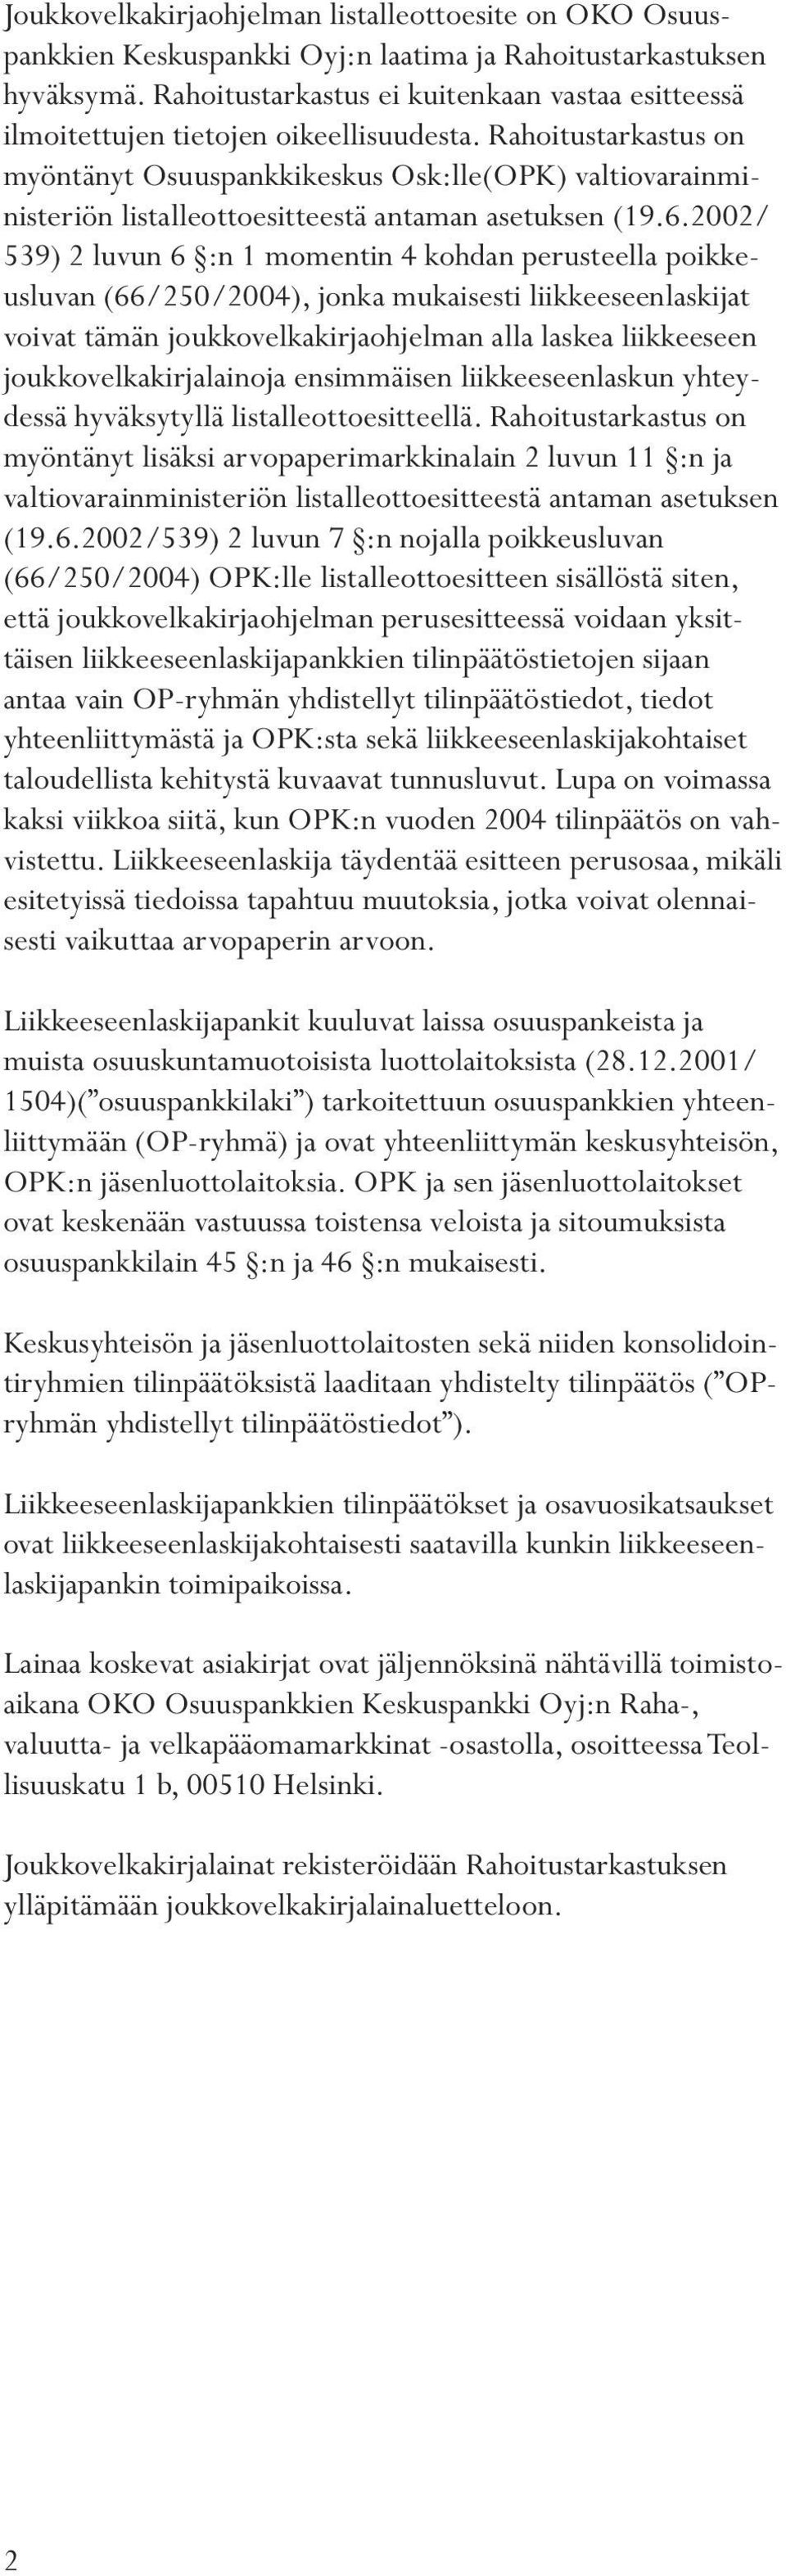 Rahoitustarkastus on myöntänyt Osuuspankkikeskus Osk:lle(OPK) valtiovarainministeriön listalleottoesitteestä antaman asetuksen (19.6.